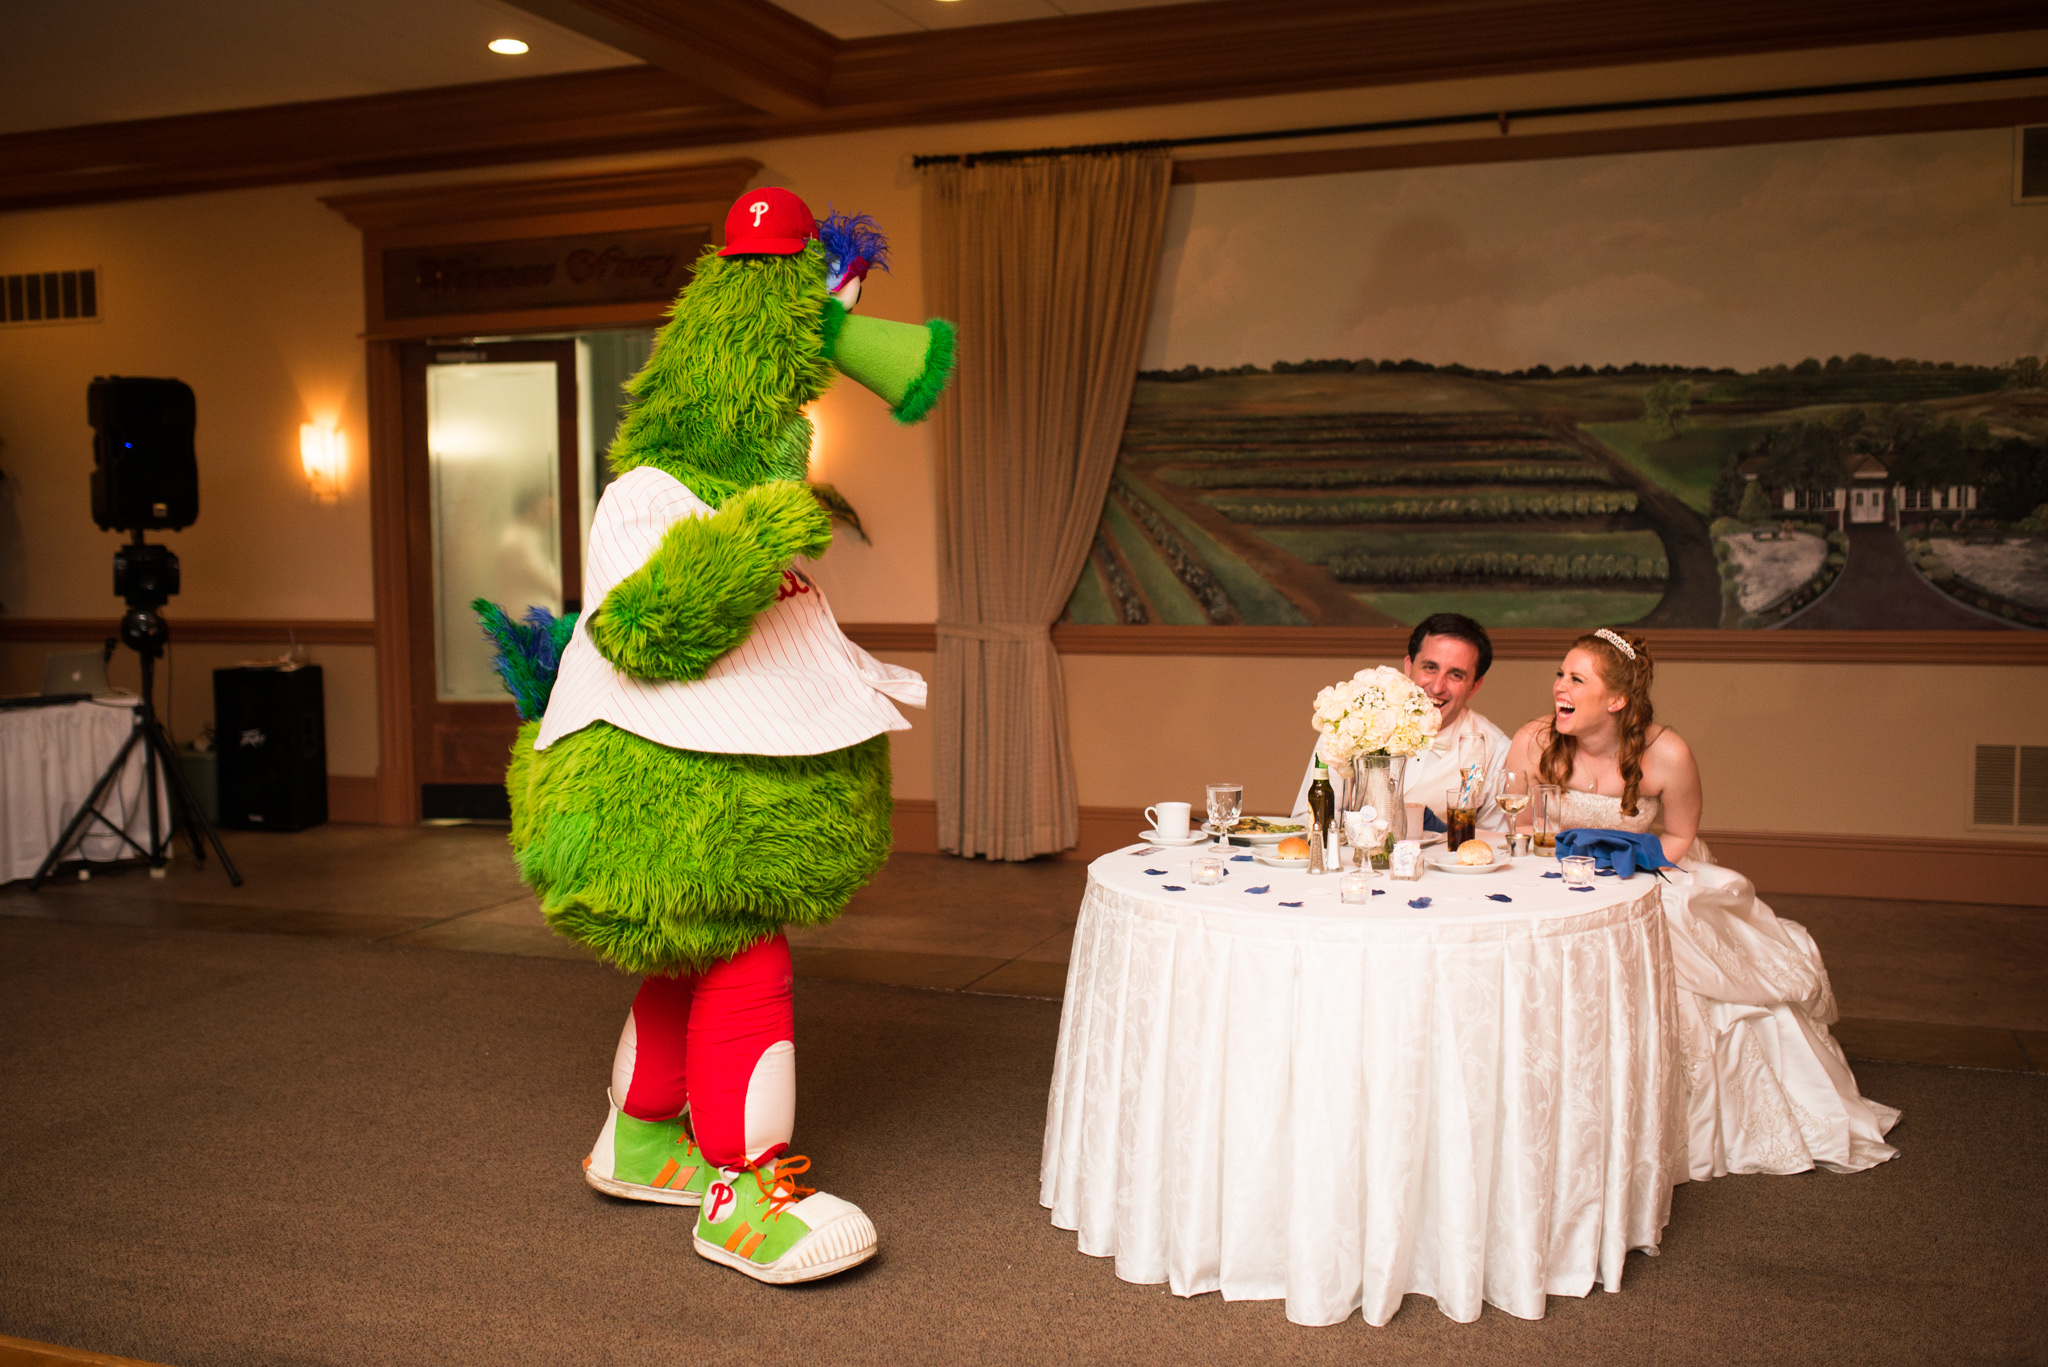 Philly Phanatic - Valenzano Winery Wedding Reception photo